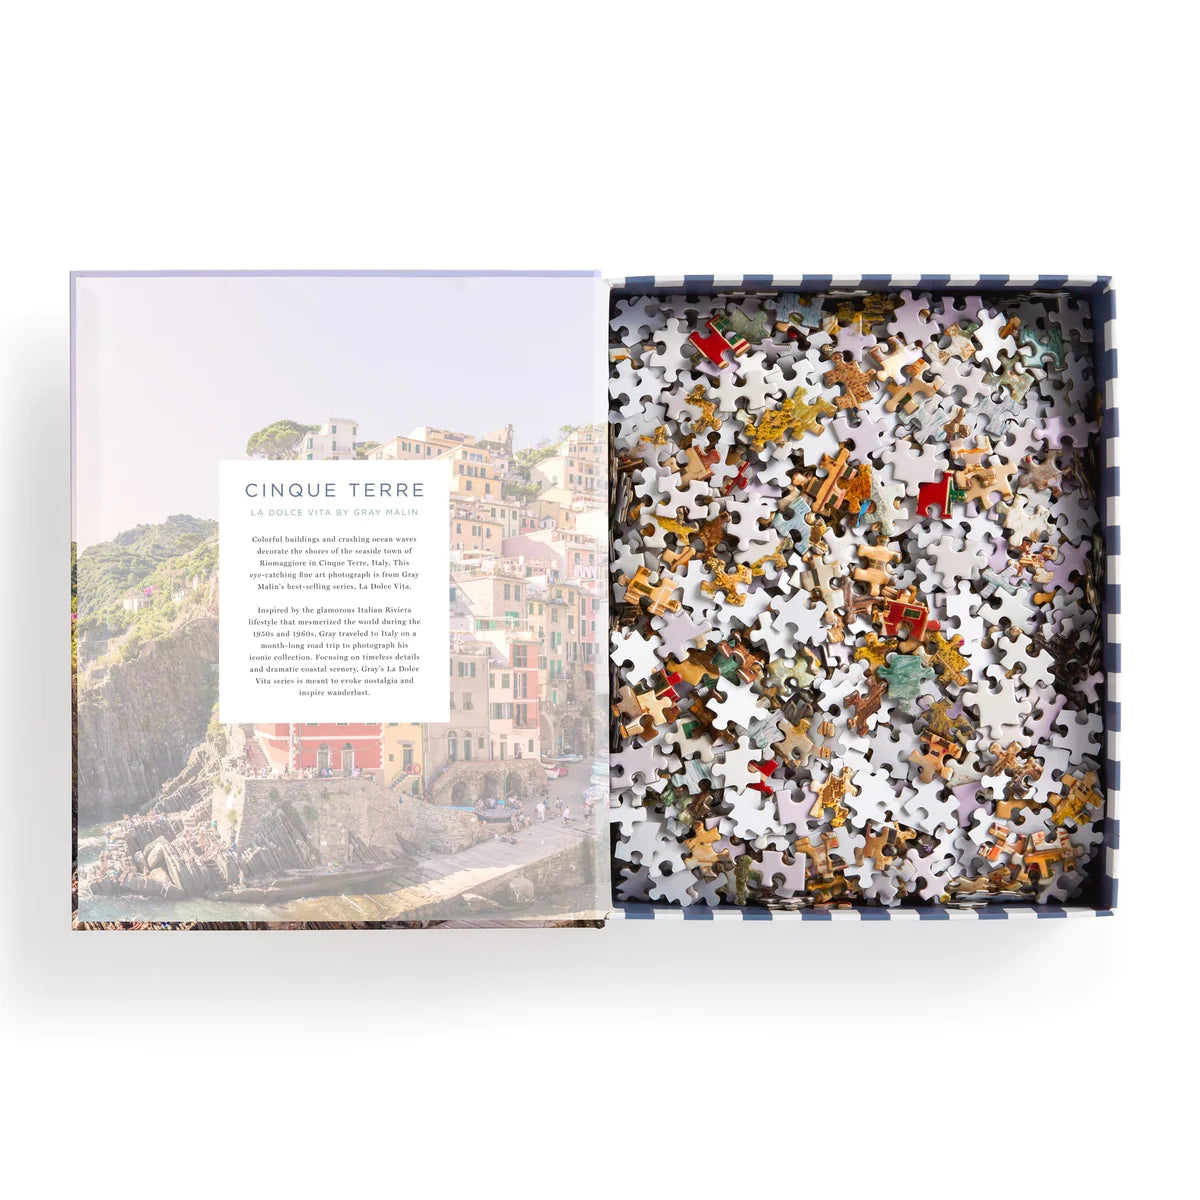 The Cinque Terre 1000 Piece Puzzle Book